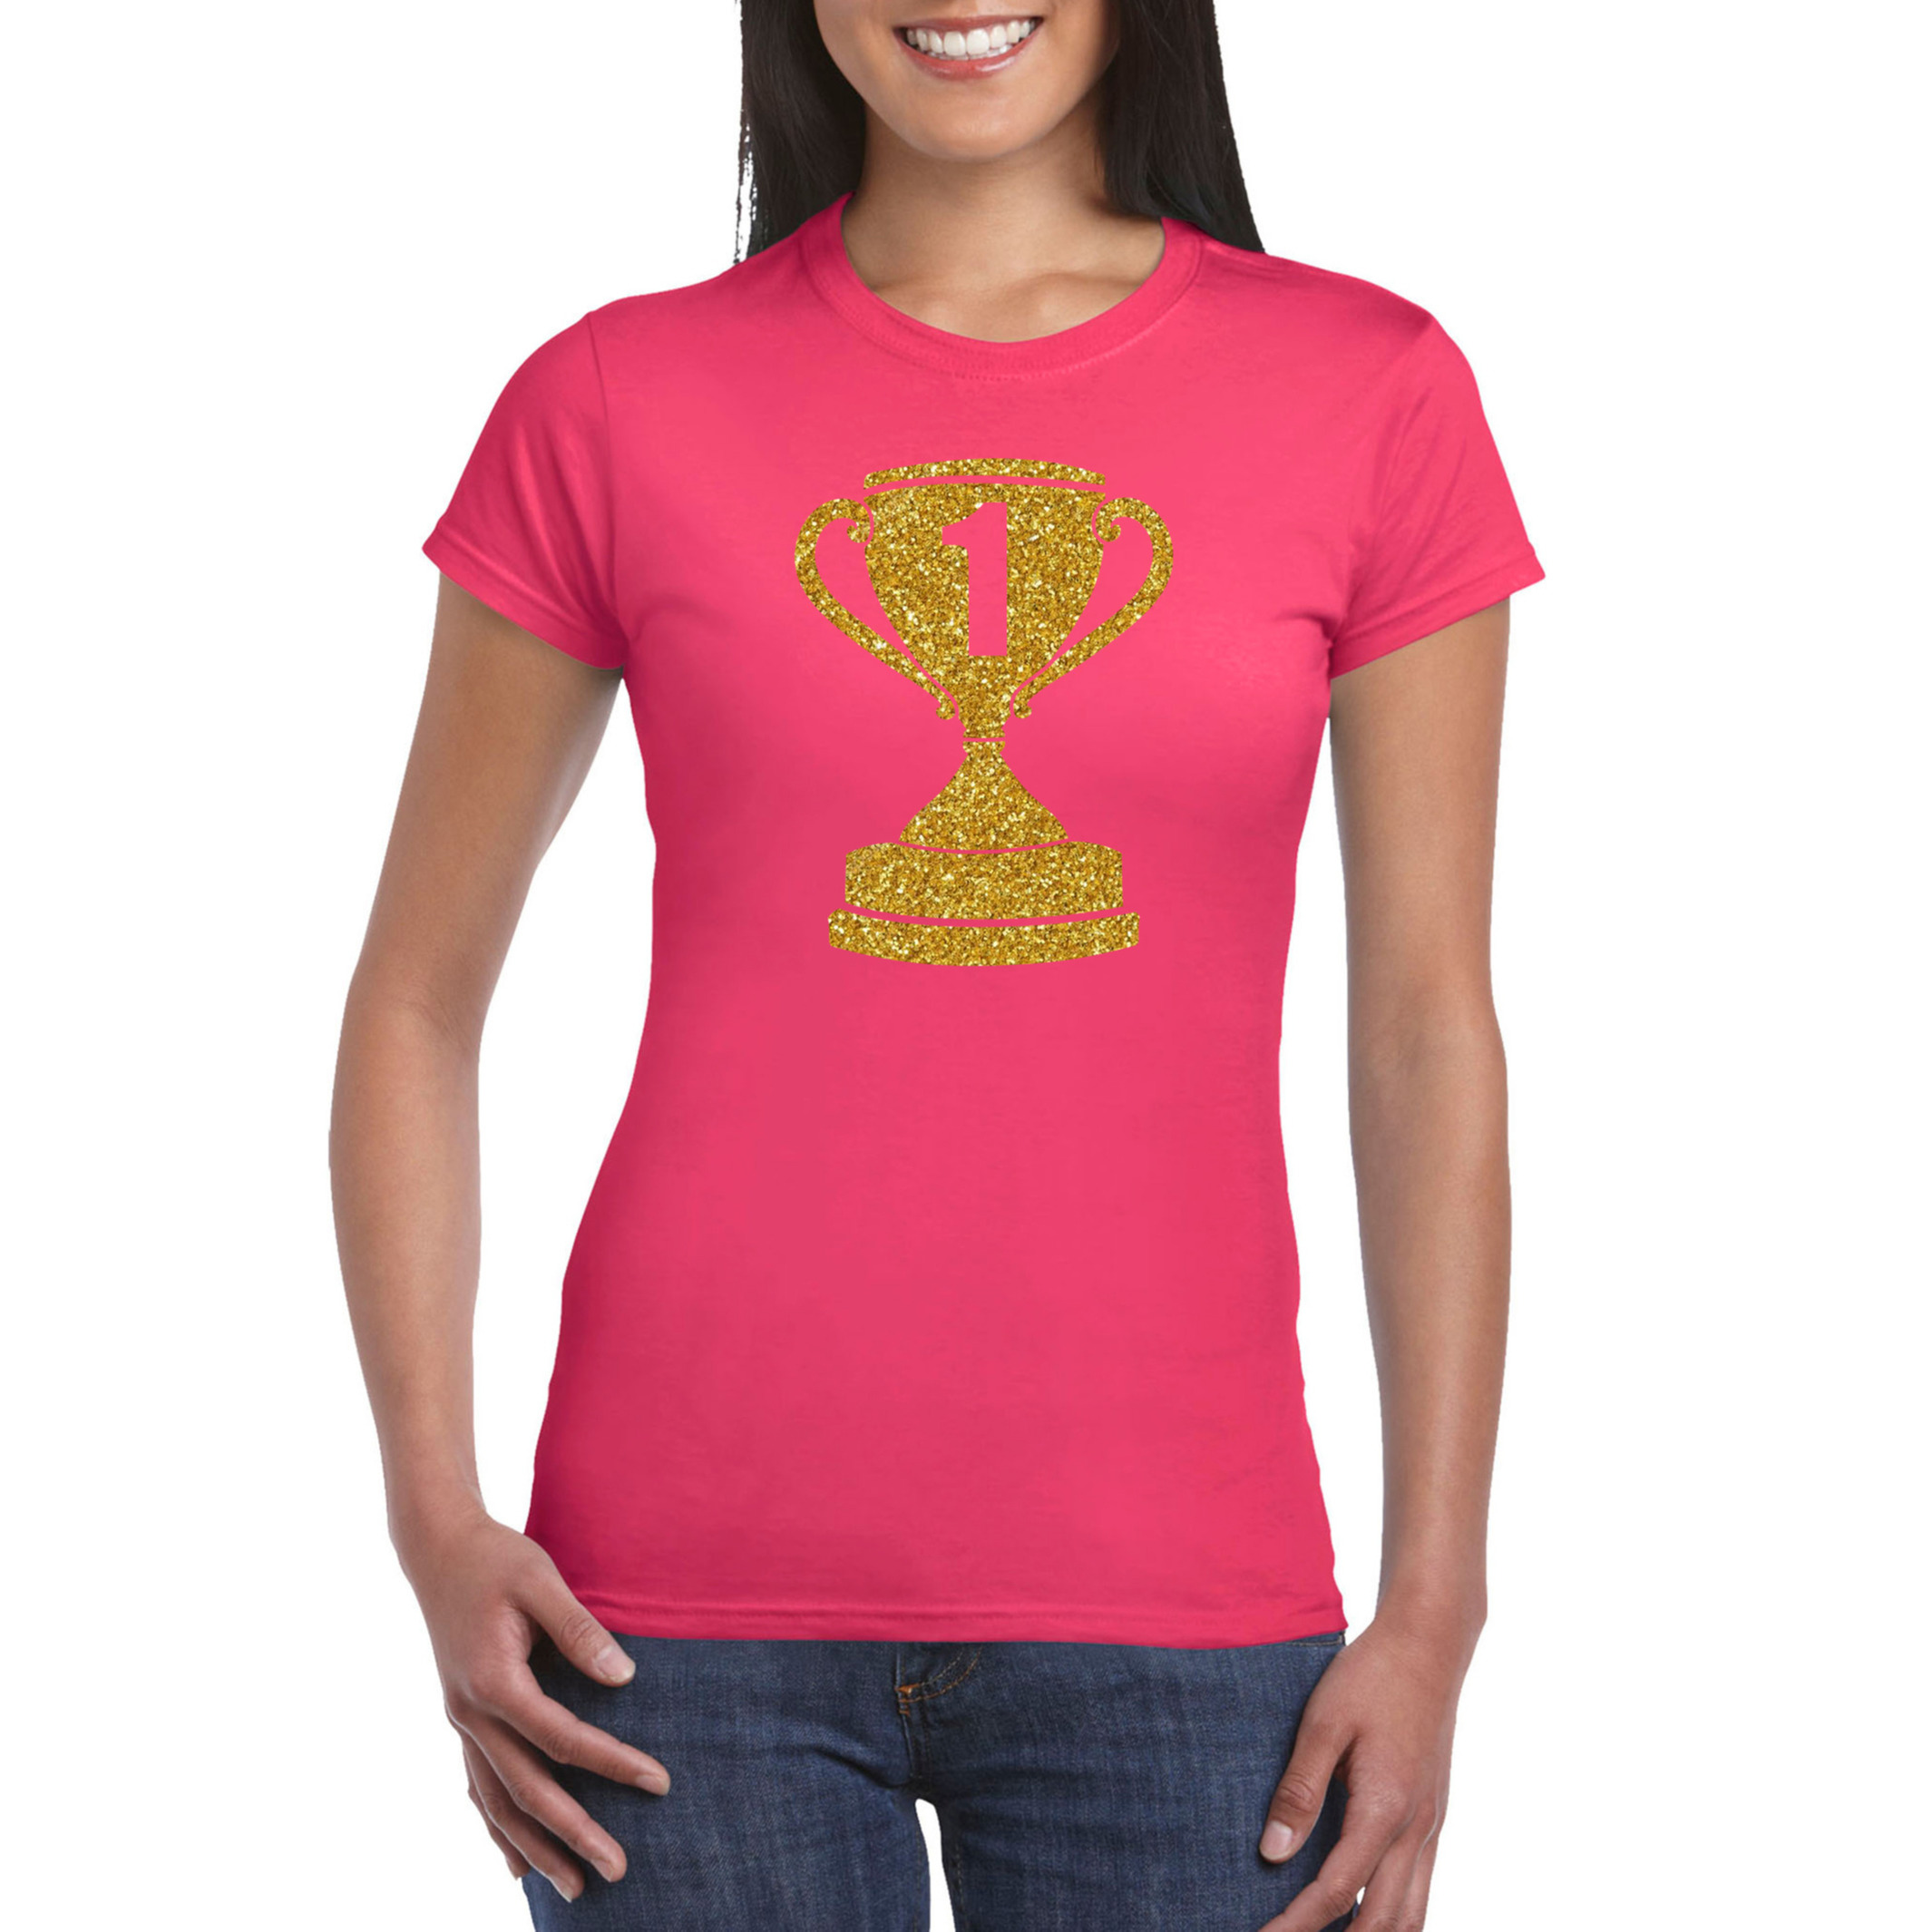 Gouden kampioens beker-nummer 1 t-shirt-kleding roze dames